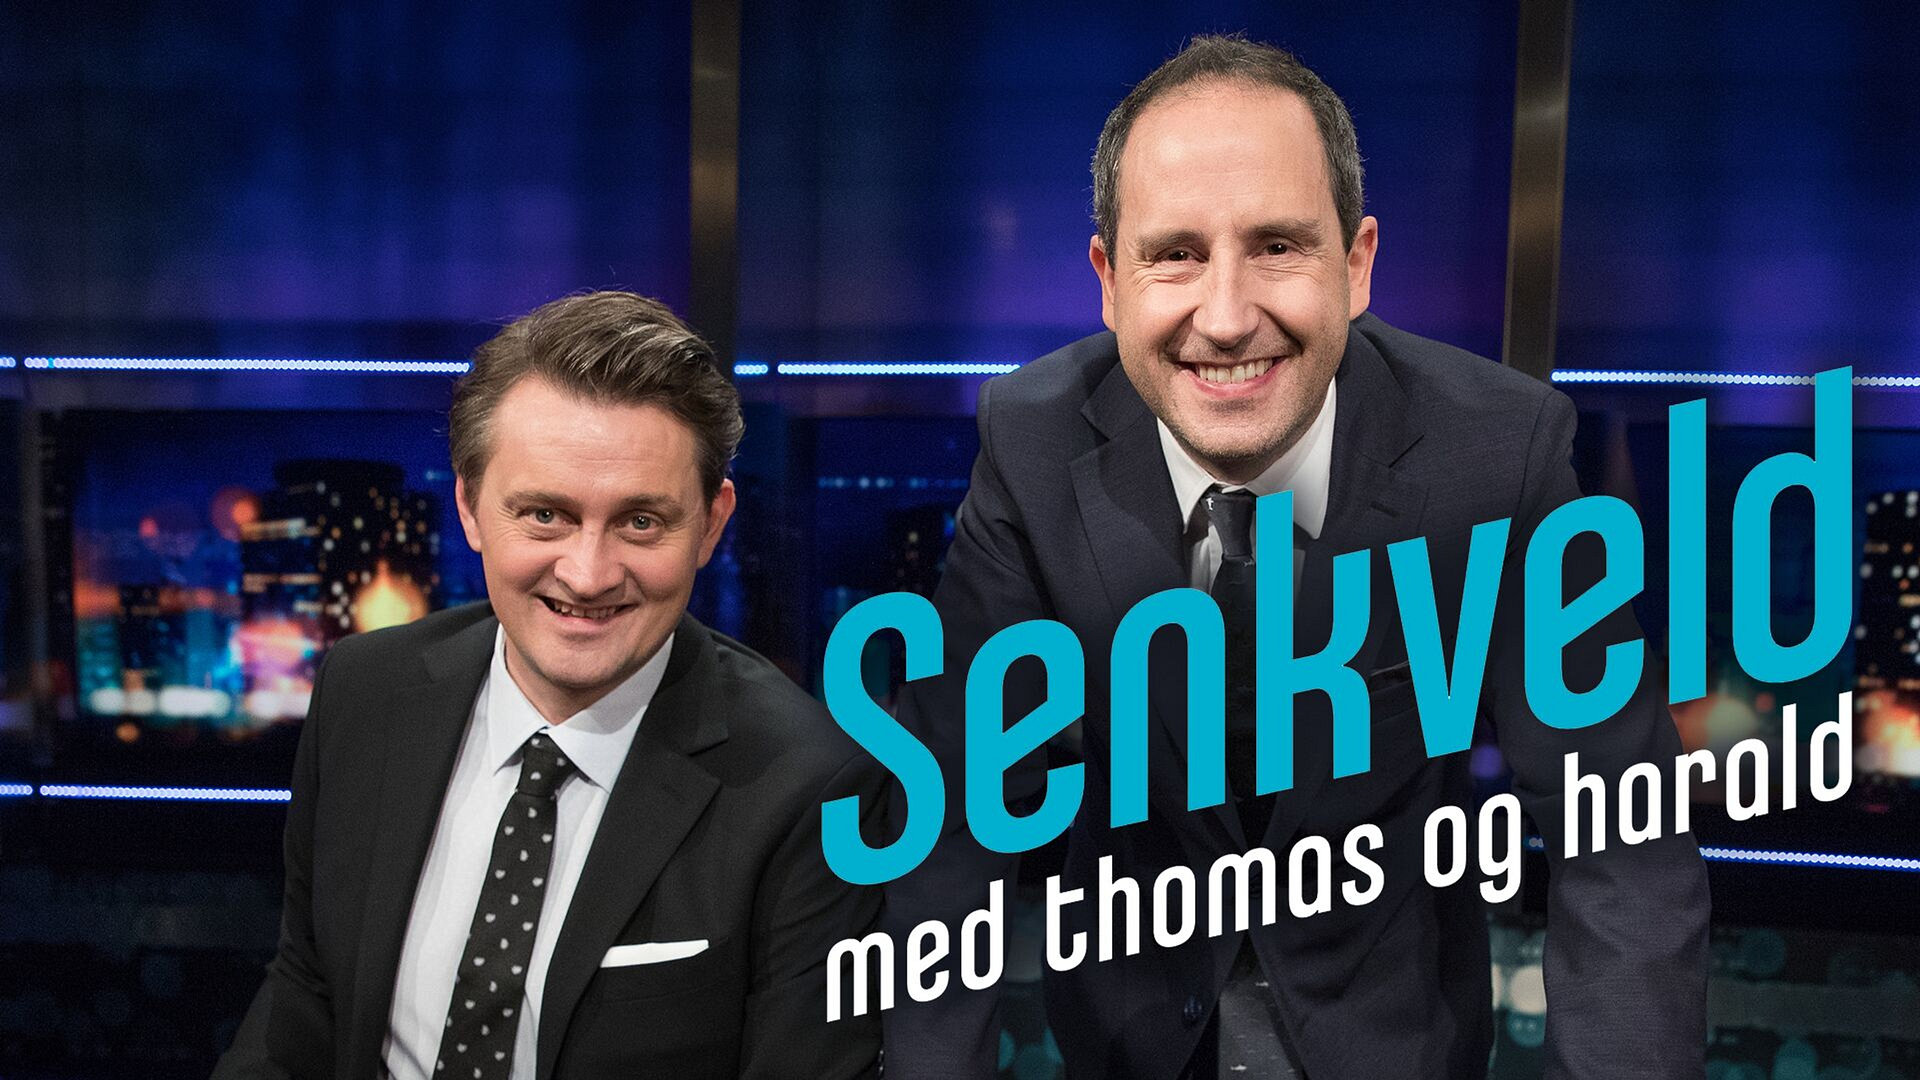 Senkveld med Thomas og Harald (24) - episode 5